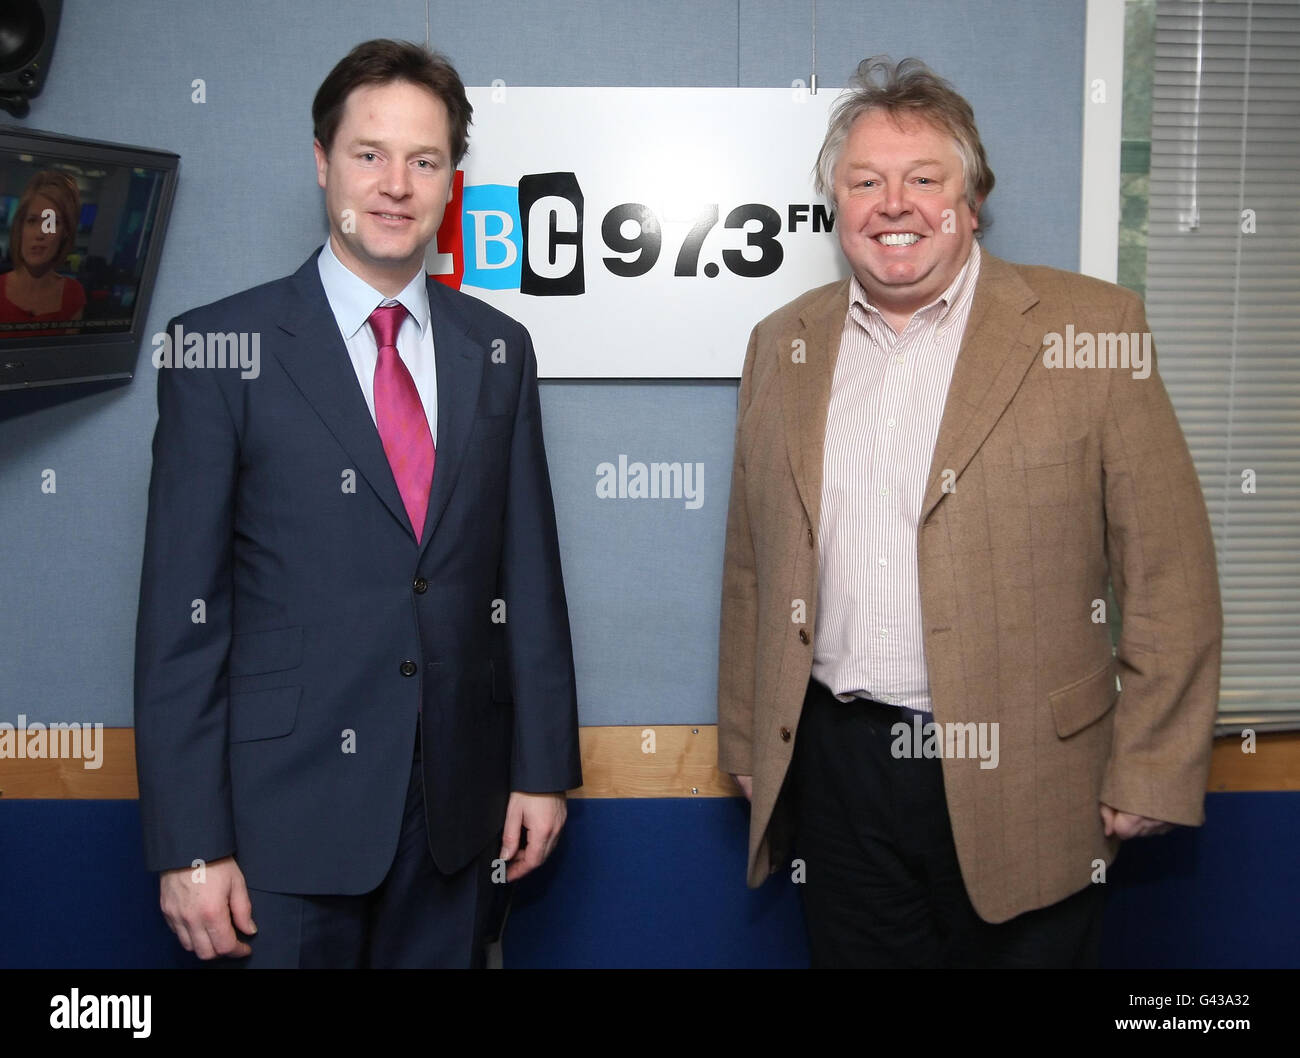 Il vice primo ministro Nick Clegg con il presentatore Nick Ferrari alla LBC 97.3 a Leicester Square, nel centro di Londra. Foto Stock